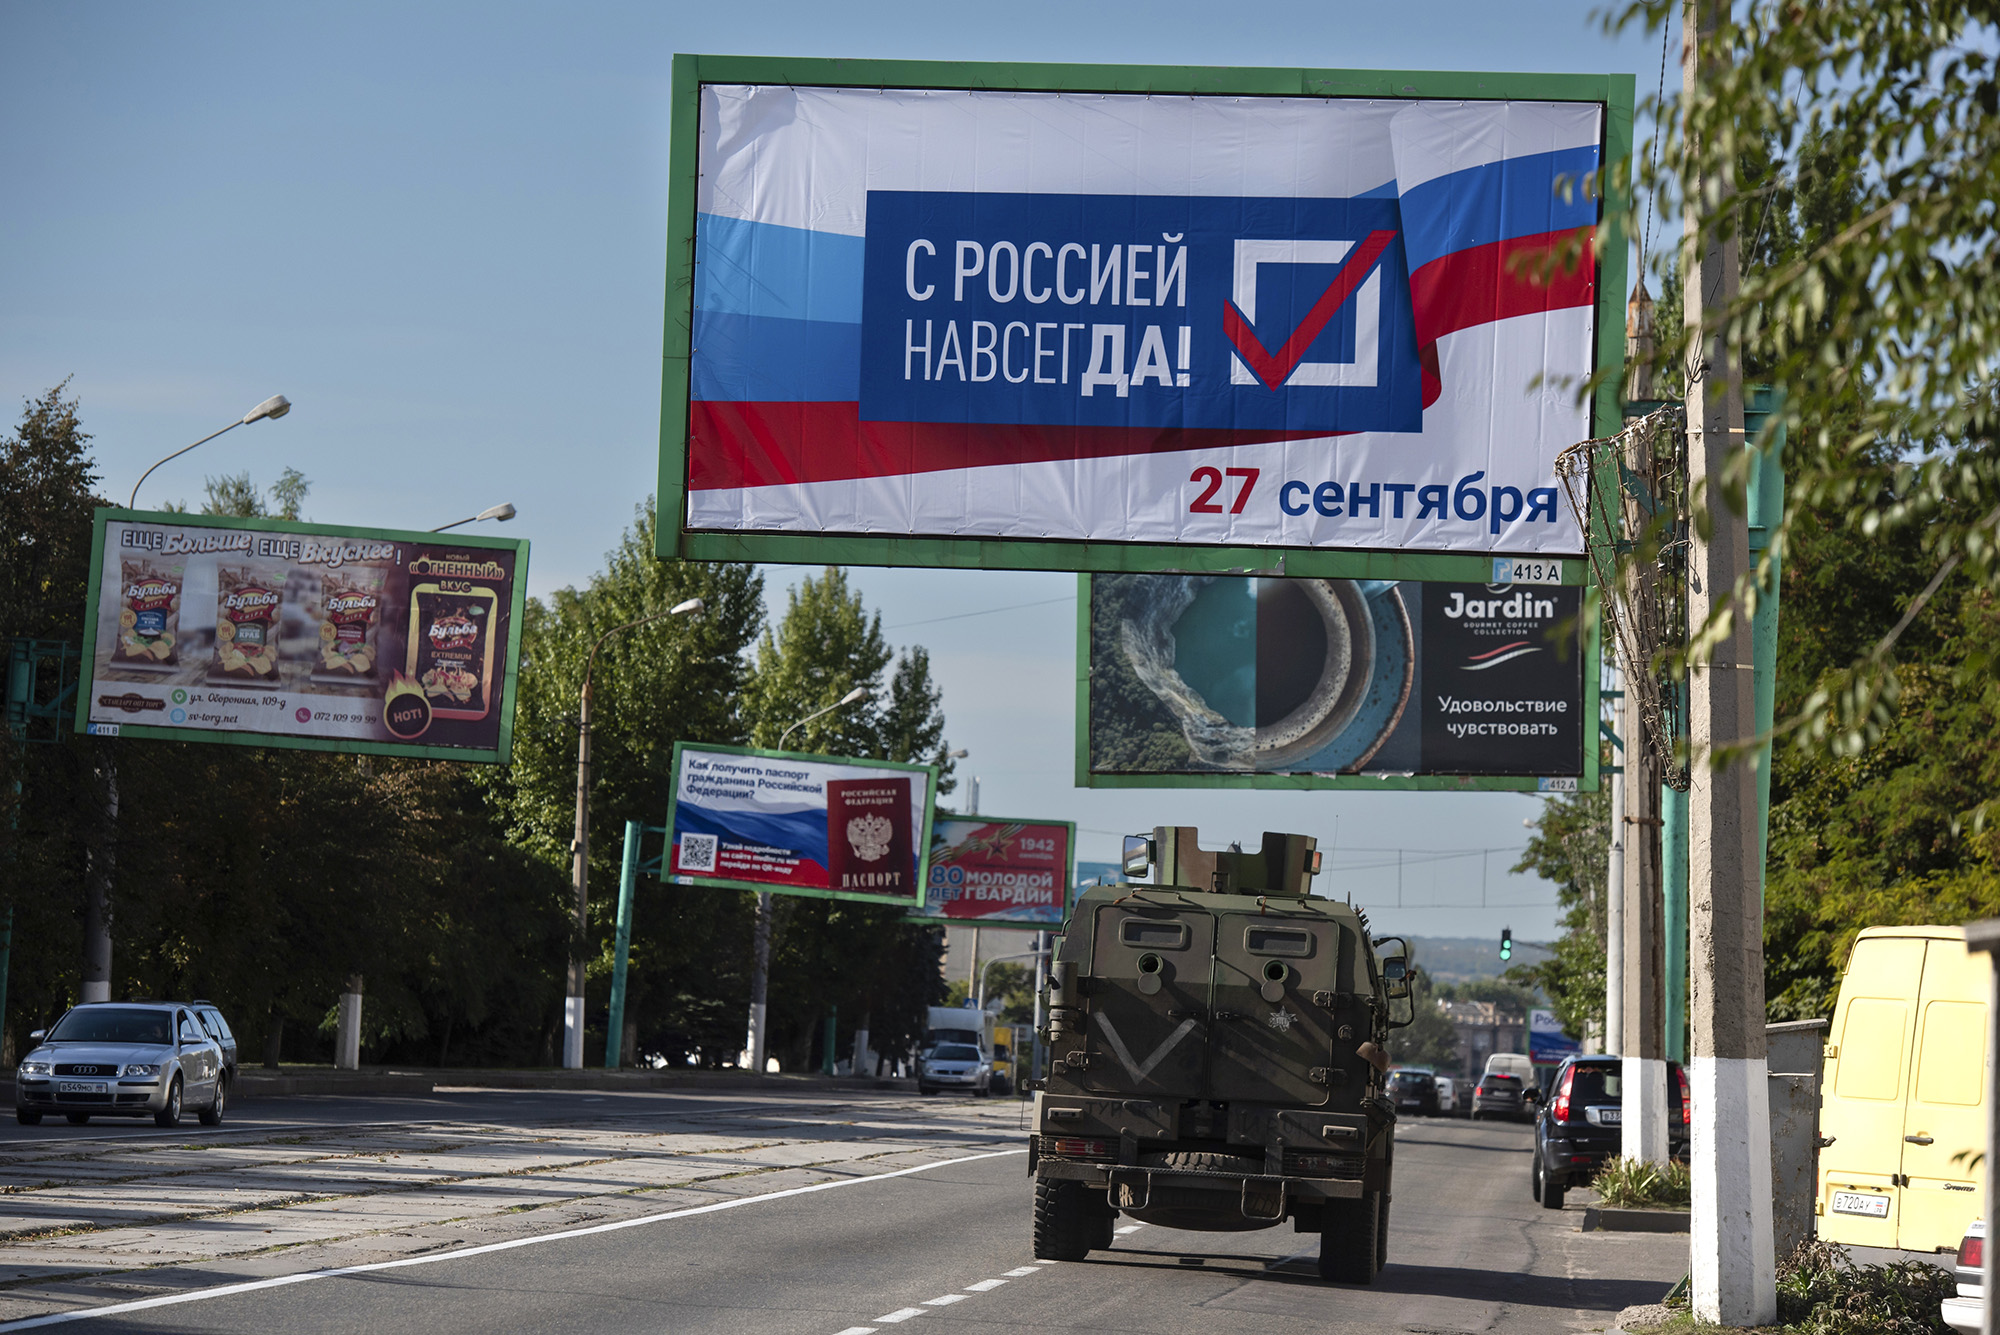 Военная машина едет по улице с рекламным щитом "Навсегда с Россией, 27 сентября" В преддверии референдума в Луганске на востоке Украины 22 сентября.